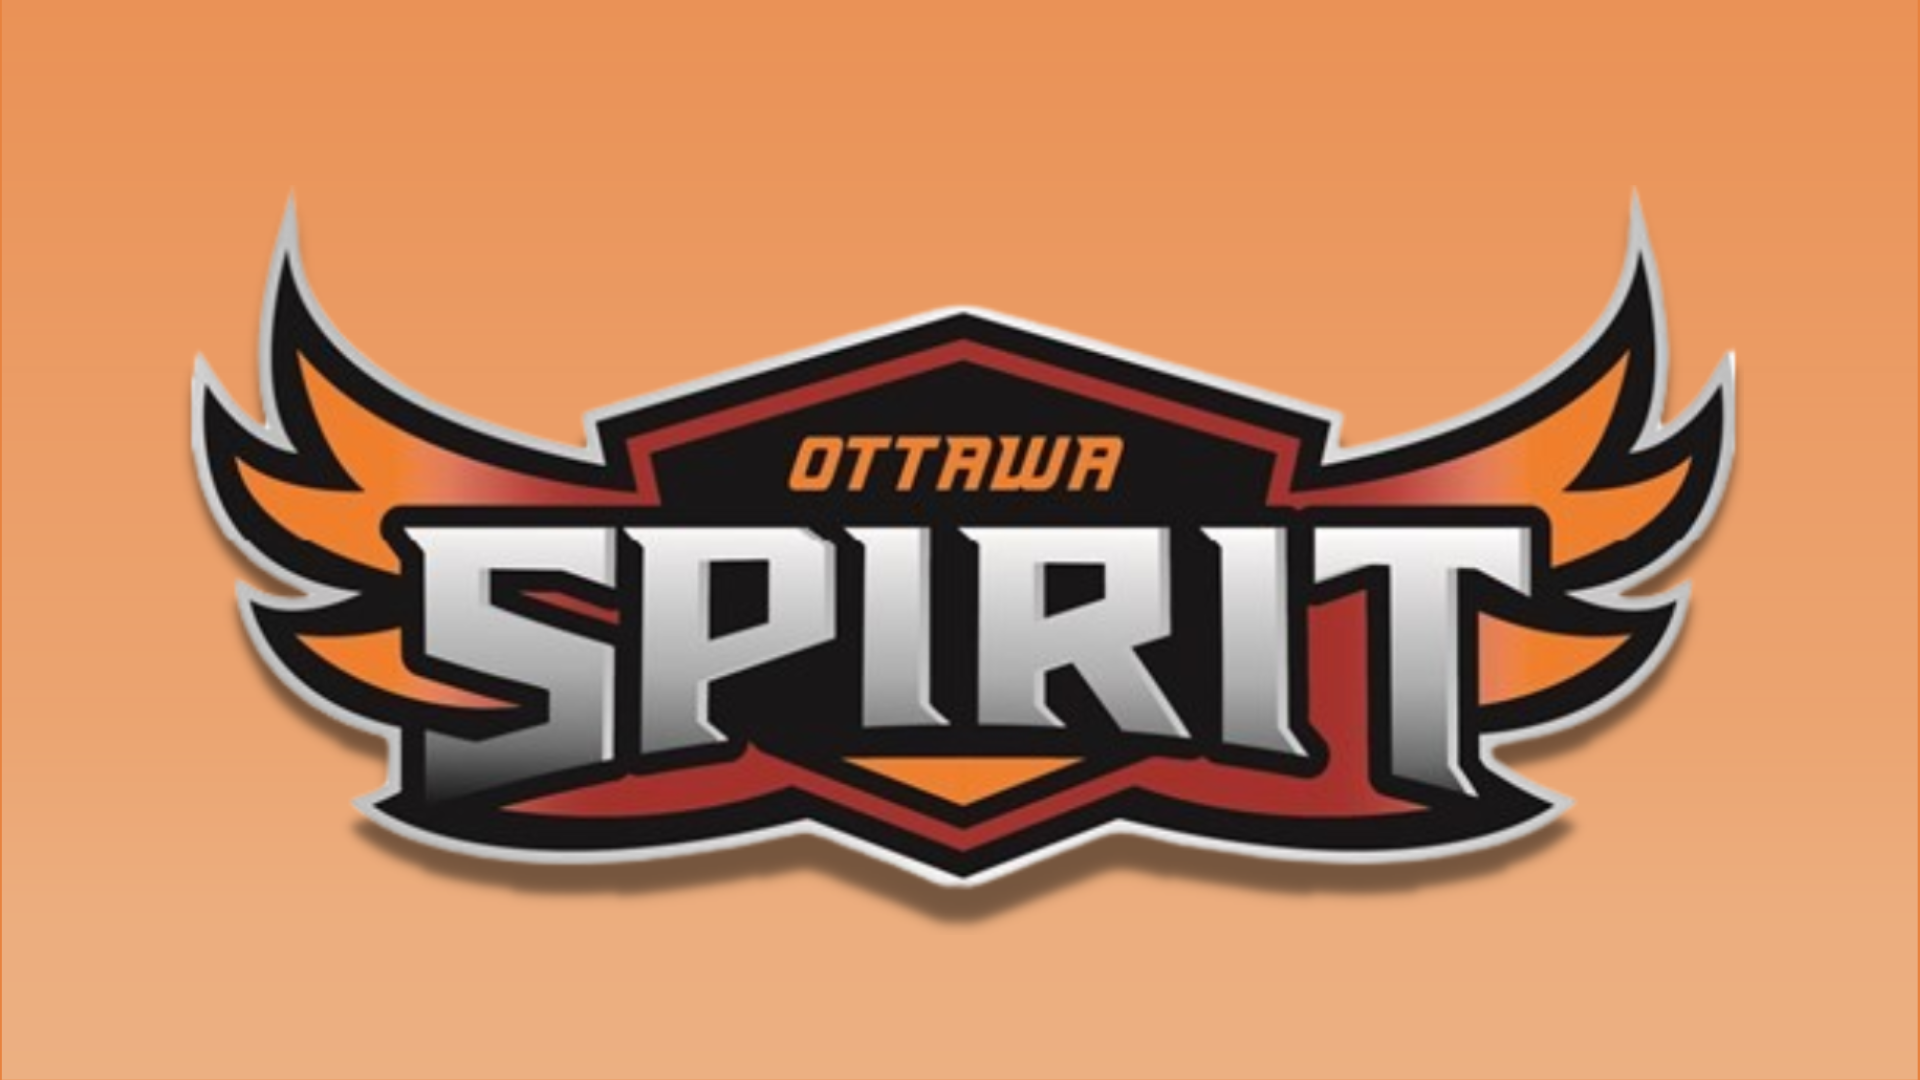 NAIA NEWS: Brubaker named Interim Head Coach at Ottawa University Arizona – HoopDirt